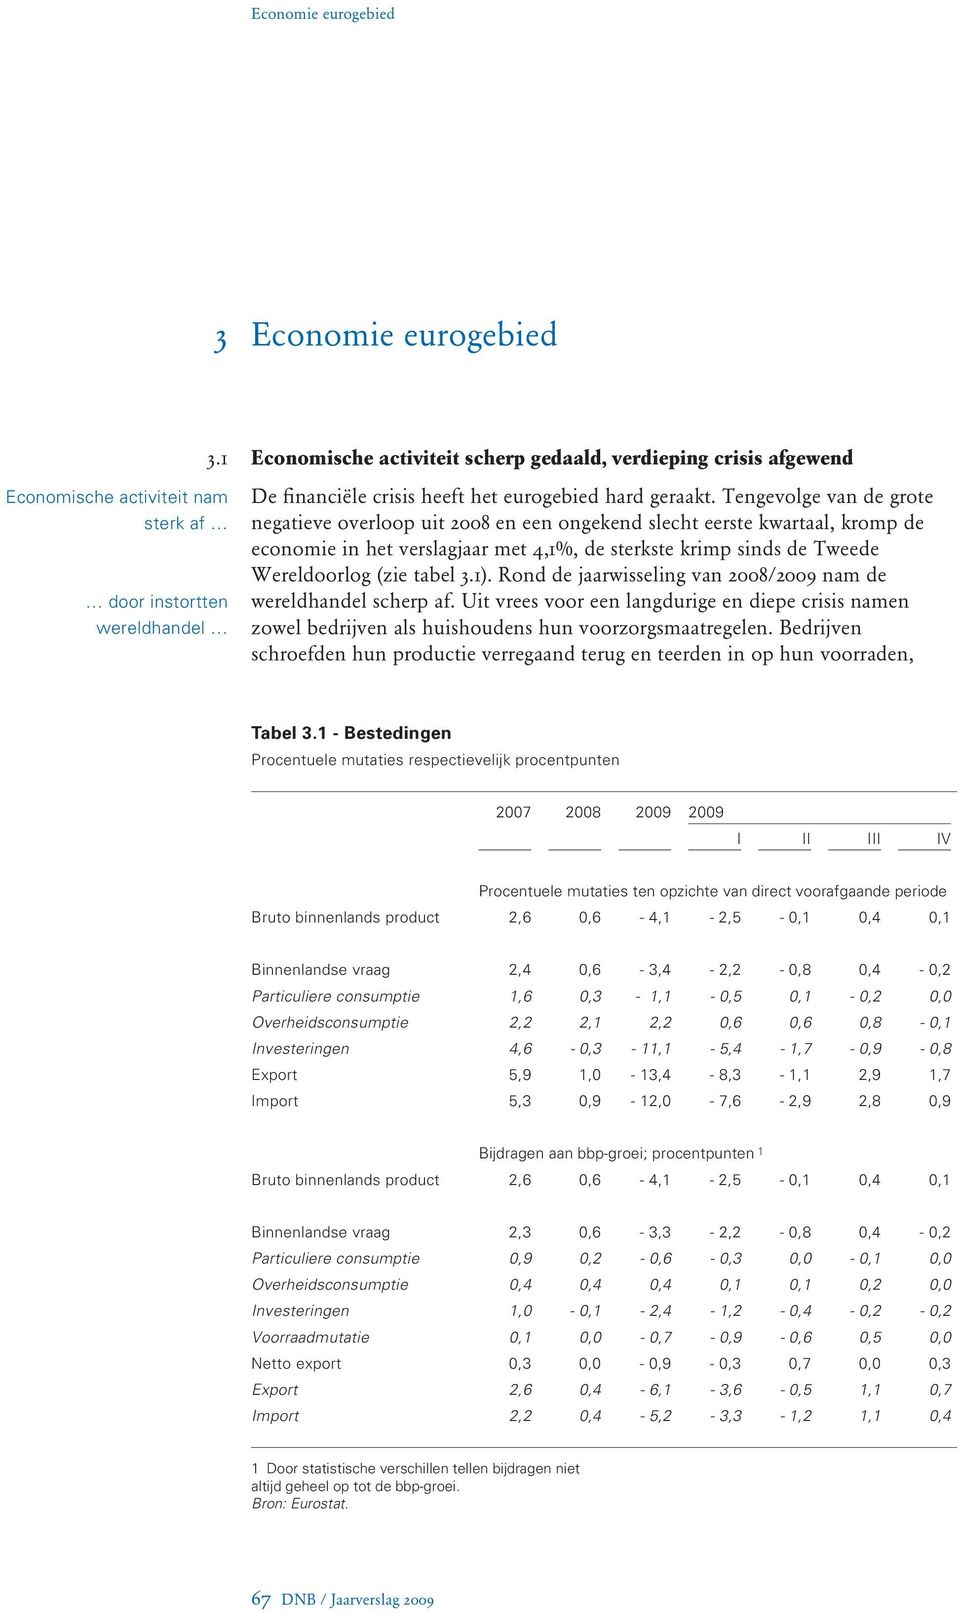 Tengevolge van de grote negatieve overloop uit 2008 en een ongekend slecht eerste kwartaal, kromp de economie in het verslagjaar met 4,1%, de sterkste krimp sinds de Tweede Wereldoorlog (zie tabel 3.